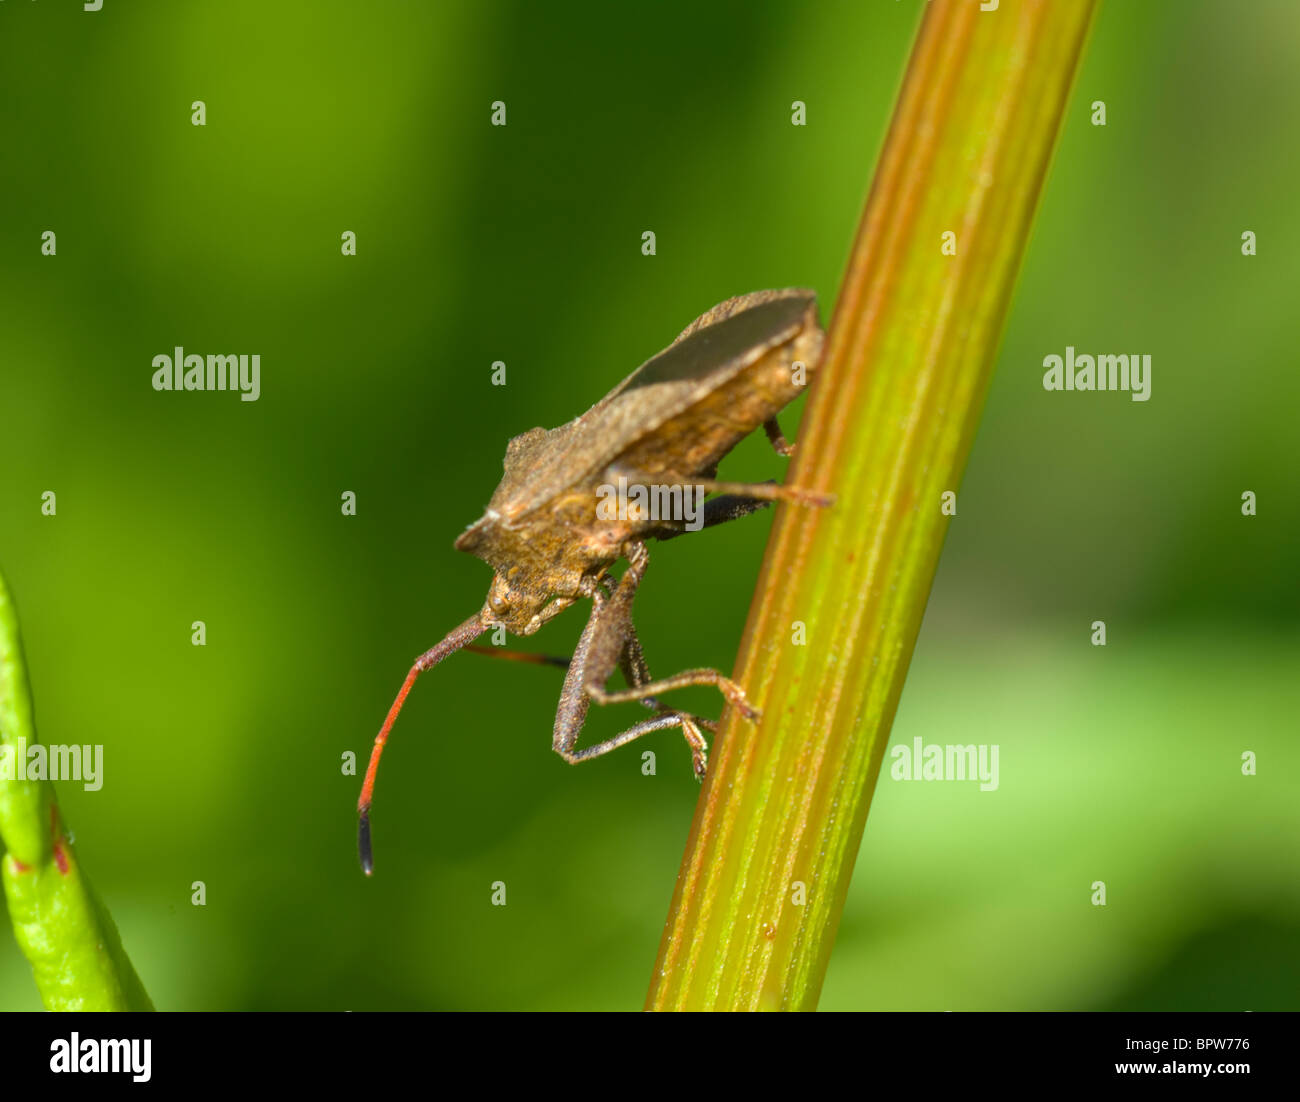 Squash Bug (Coreus marginatus), France Stock Photo